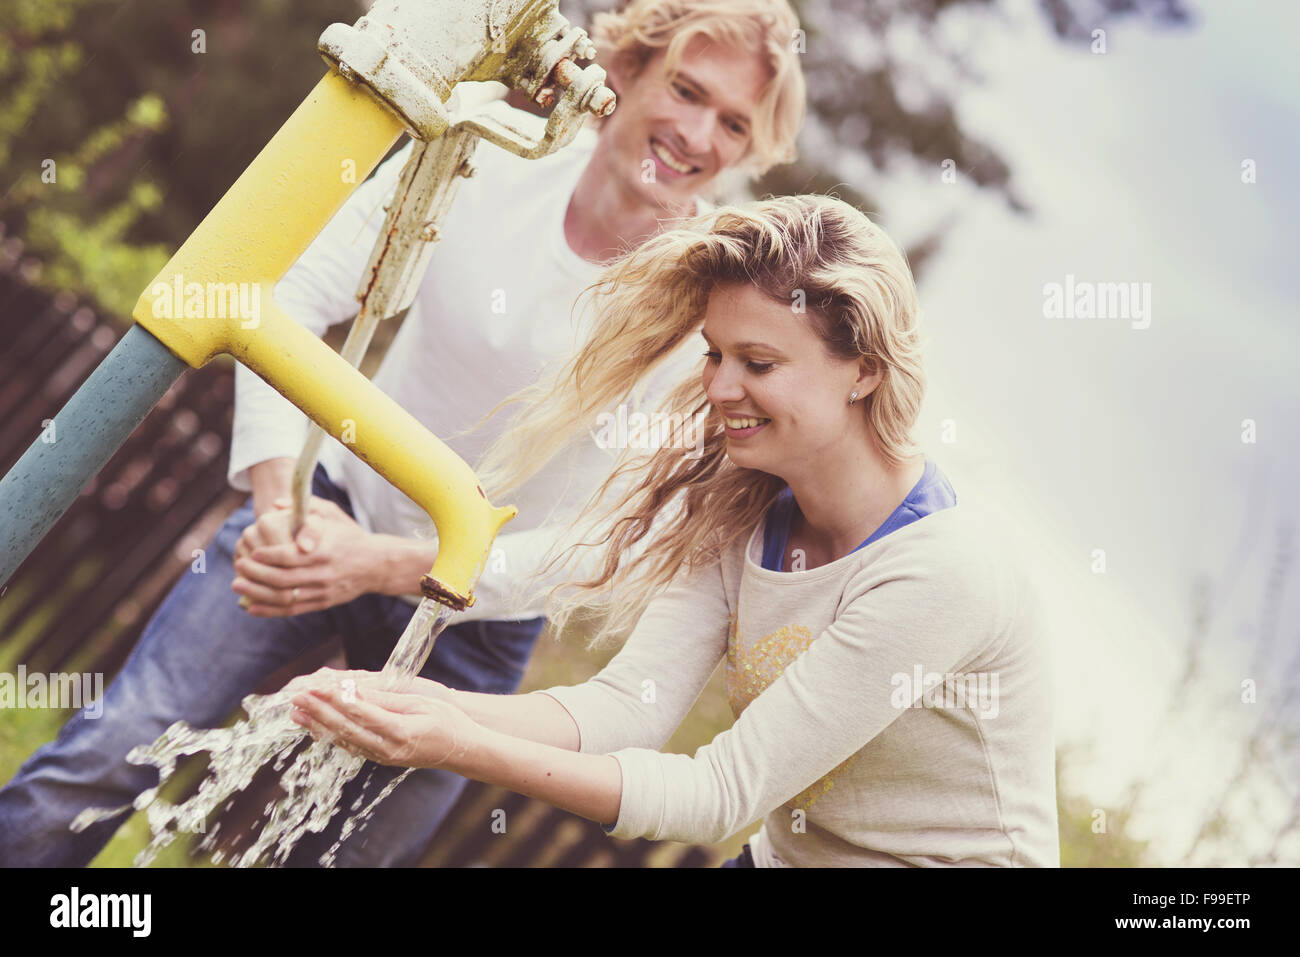 Frühling im freien Porträt des jungen Brautpaares Pumpen von Wasser aus der Wasserpumpe Stockfoto